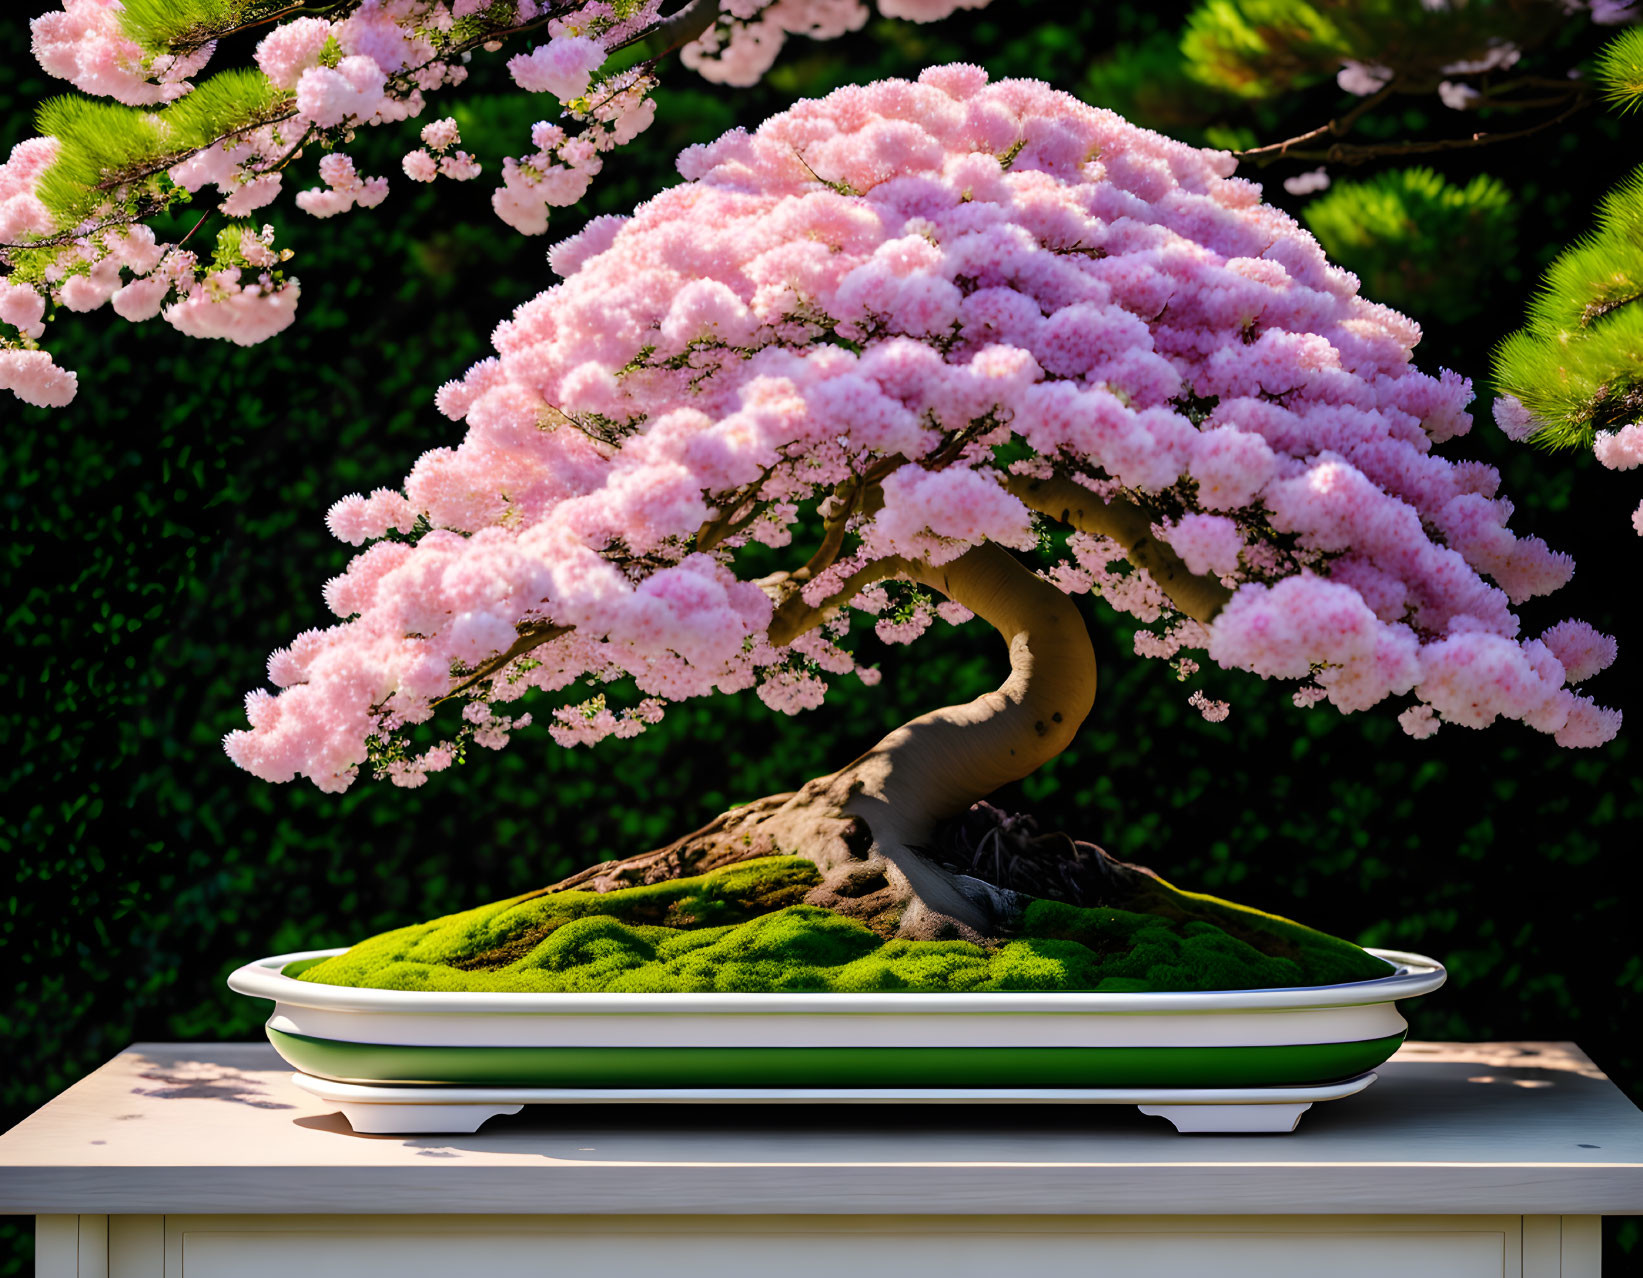 Relaxing bonsai